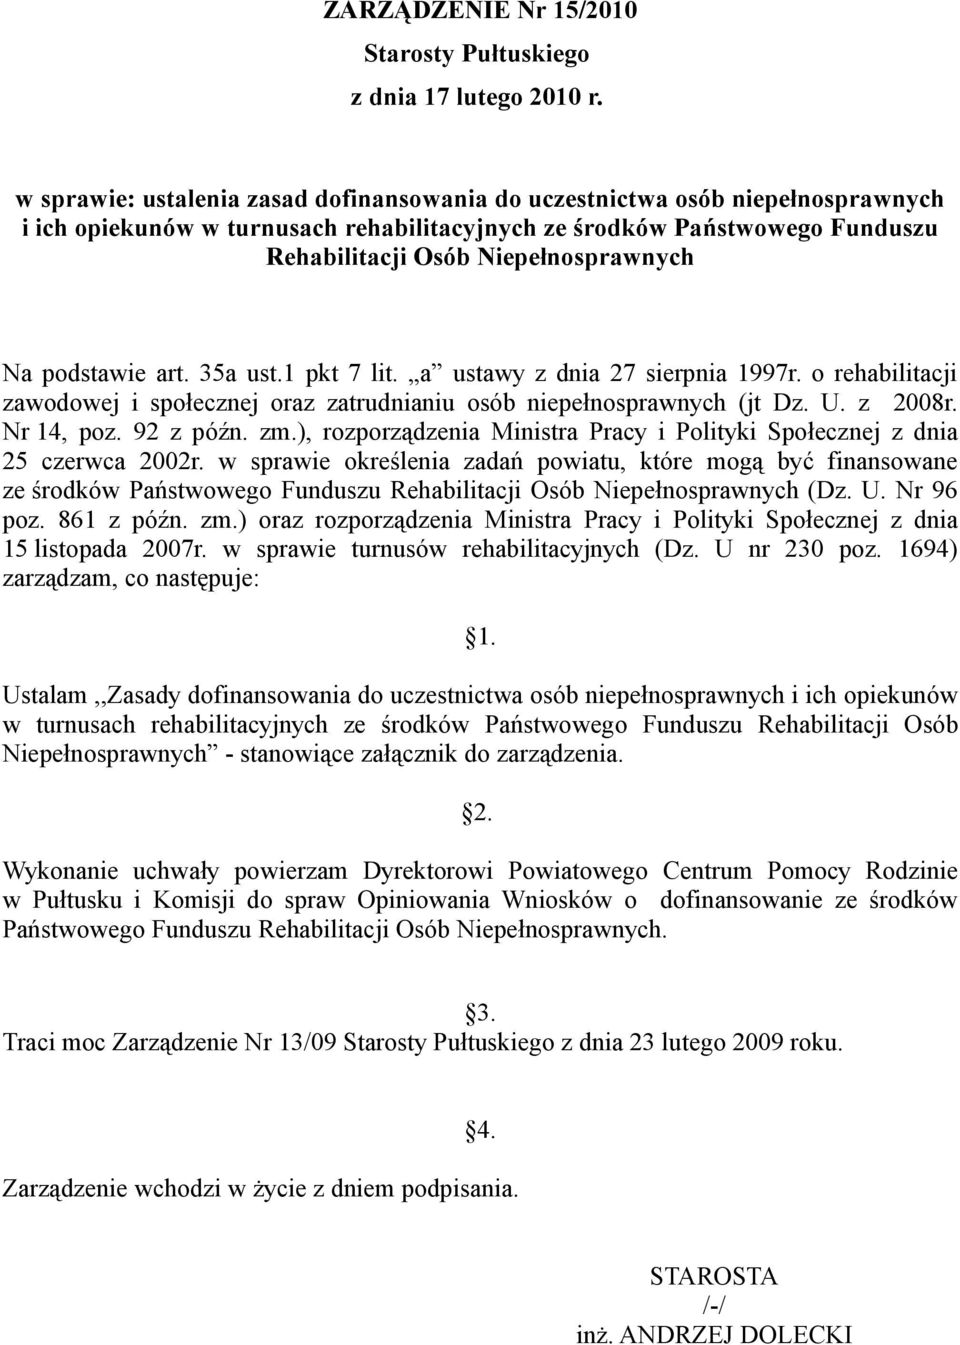 podstawie art. 35a ust.1 pkt 7 lit. a ustawy z dnia 27 sierpnia 1997r. o rehabilitacji zawodowej i społecznej oraz zatrudnianiu osób niepełnosprawnych (jt Dz. U. z 2008r. Nr 14, poz. 92 z późn. zm.